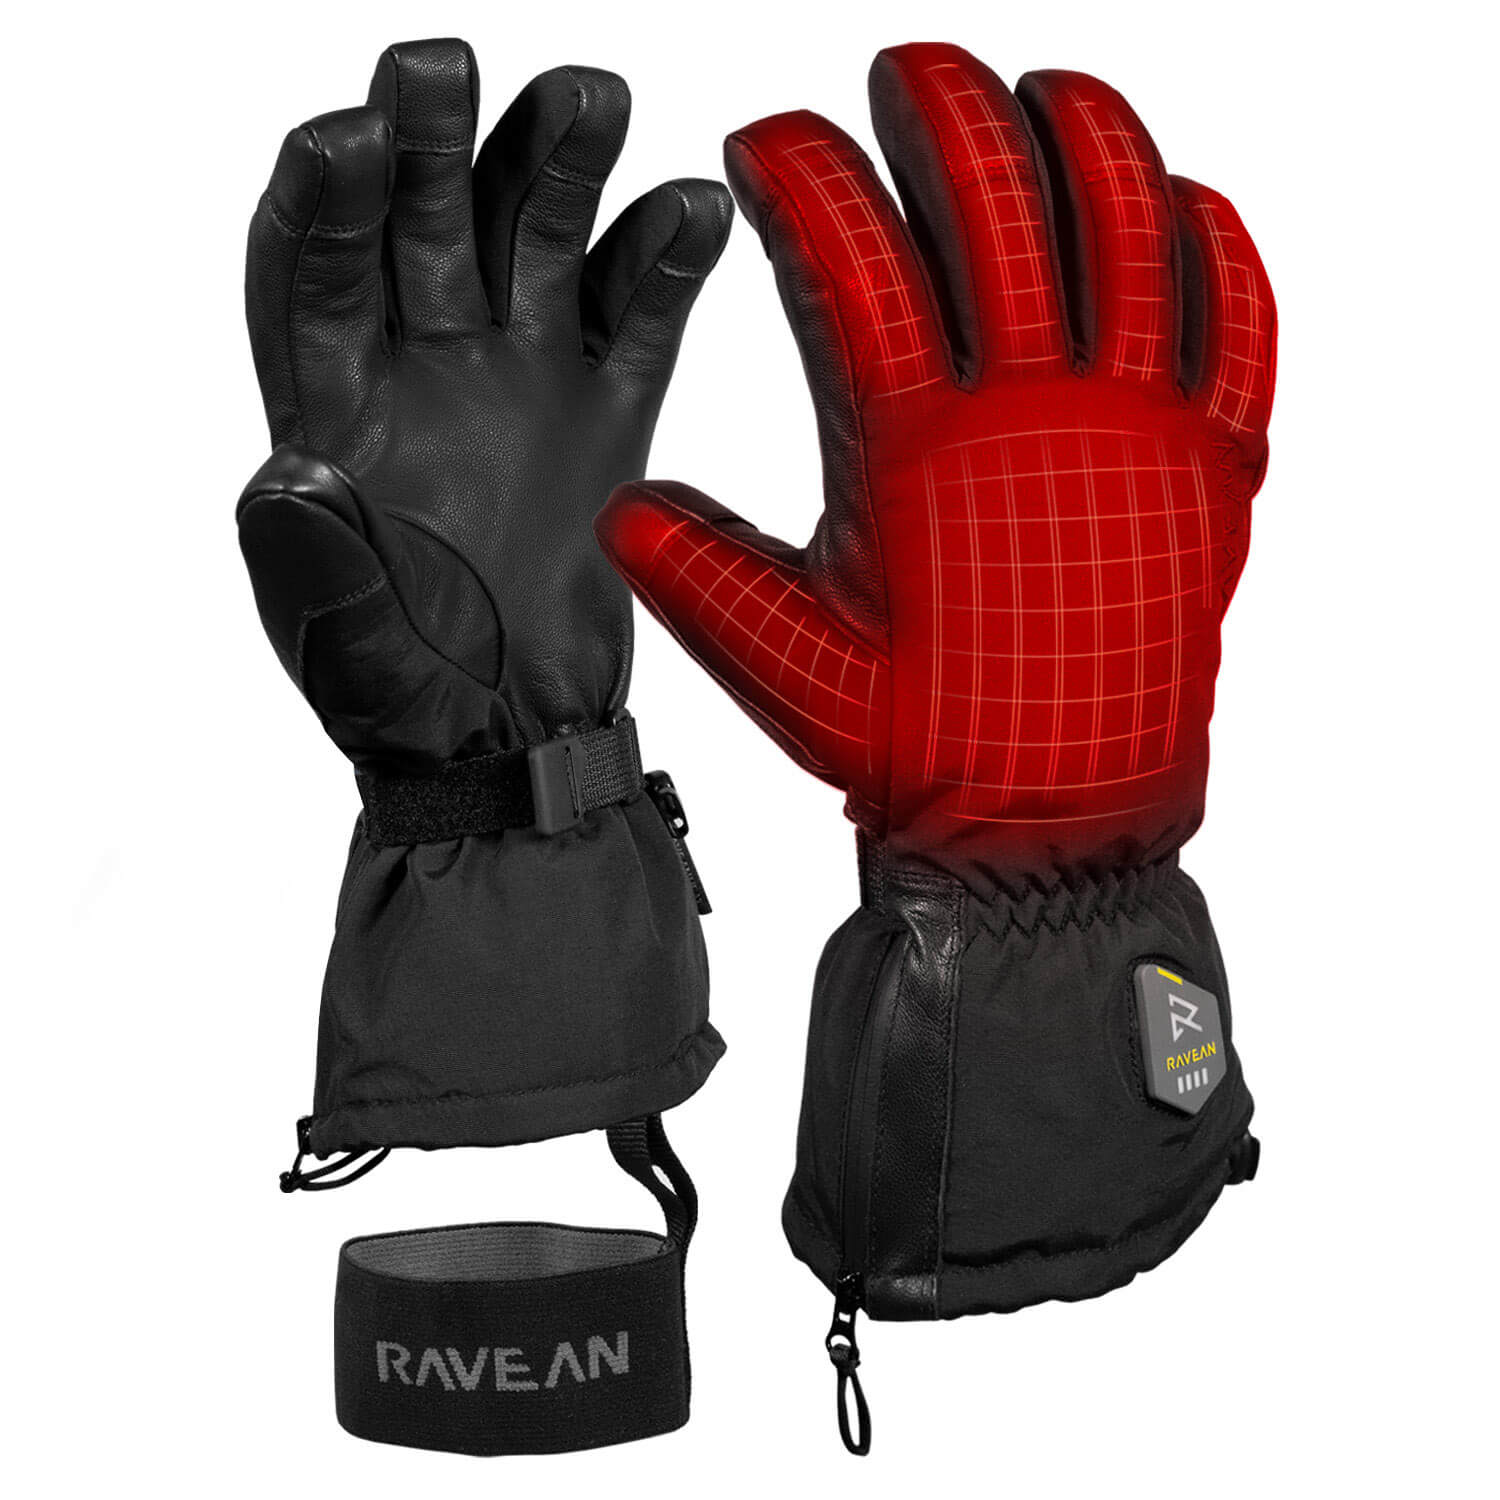 Glove / 7 / LIKE NEW